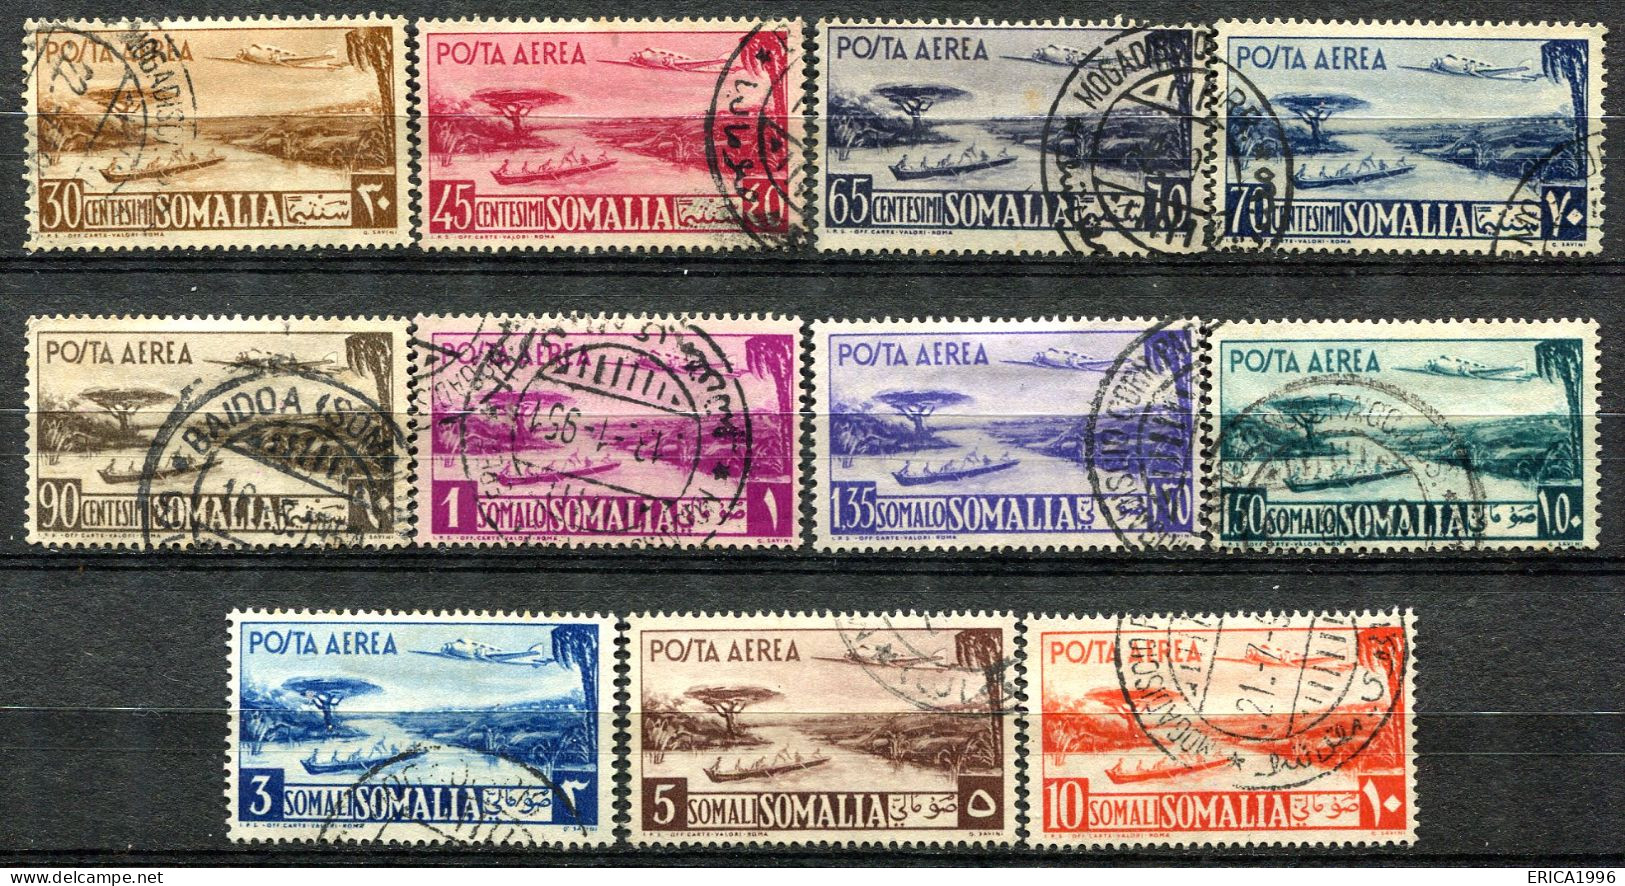 Z3688 SOMALIA AFIS 1950-51 Aereo E Veduta, Serie Completa Usata, Valore Catalogo Sassone € 400, Ottime Condizioni - Somalië (AFIS)